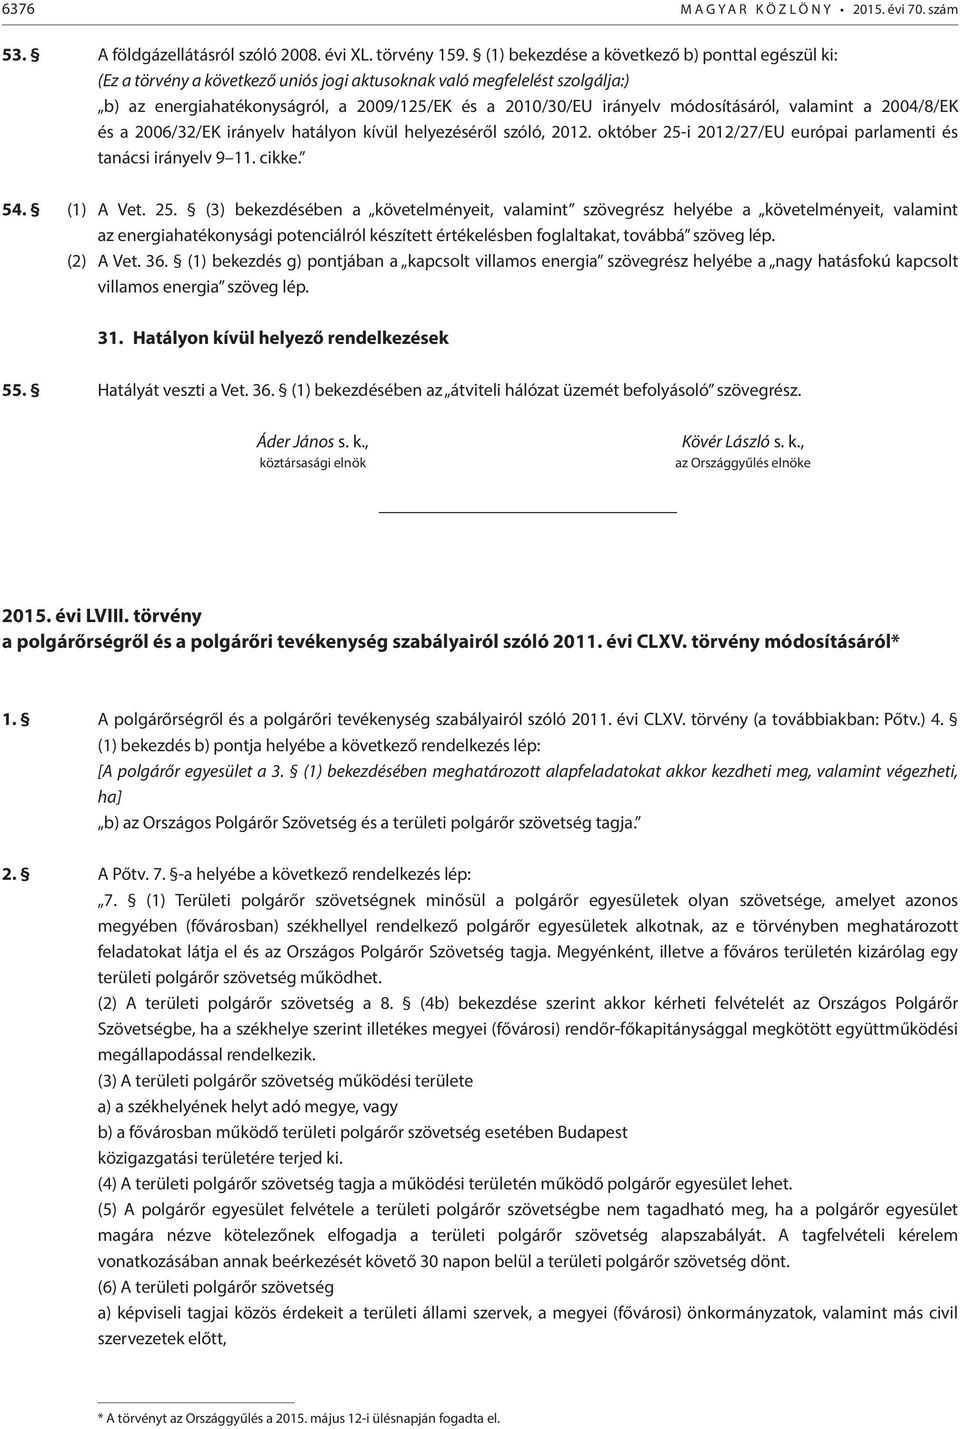 módosításáról, valamint a 2004/8/EK és a 2006/32/EK irányelv hatályon kívül helyezéséről szóló, 2012. október 25-